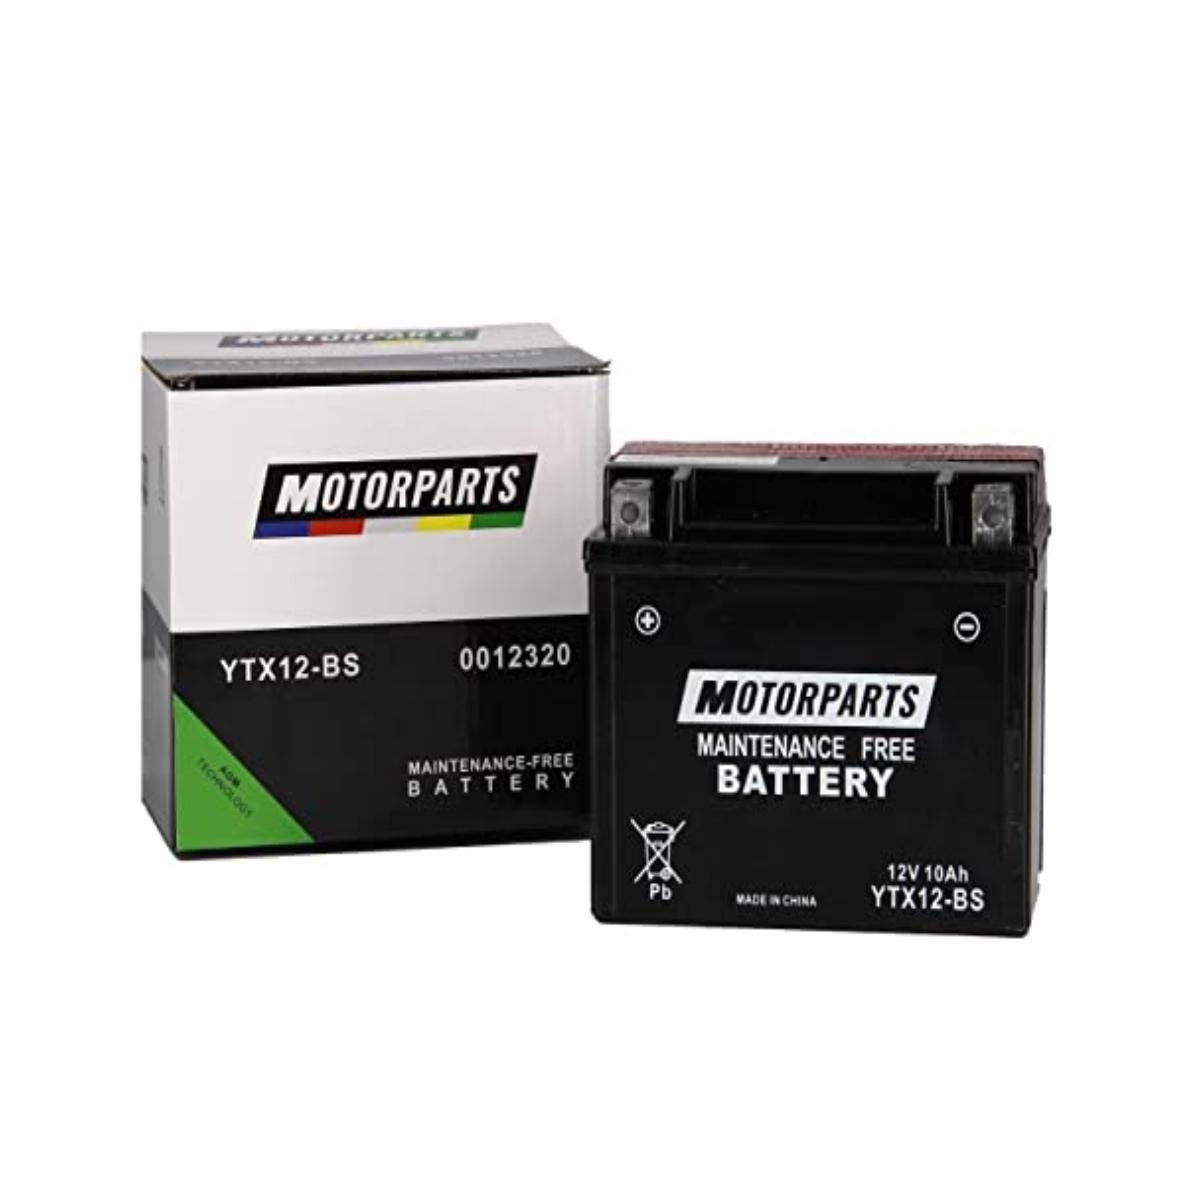 Batería De Moto YUASA TTZ7S-BS 6Ah 12V - Volta Baterias